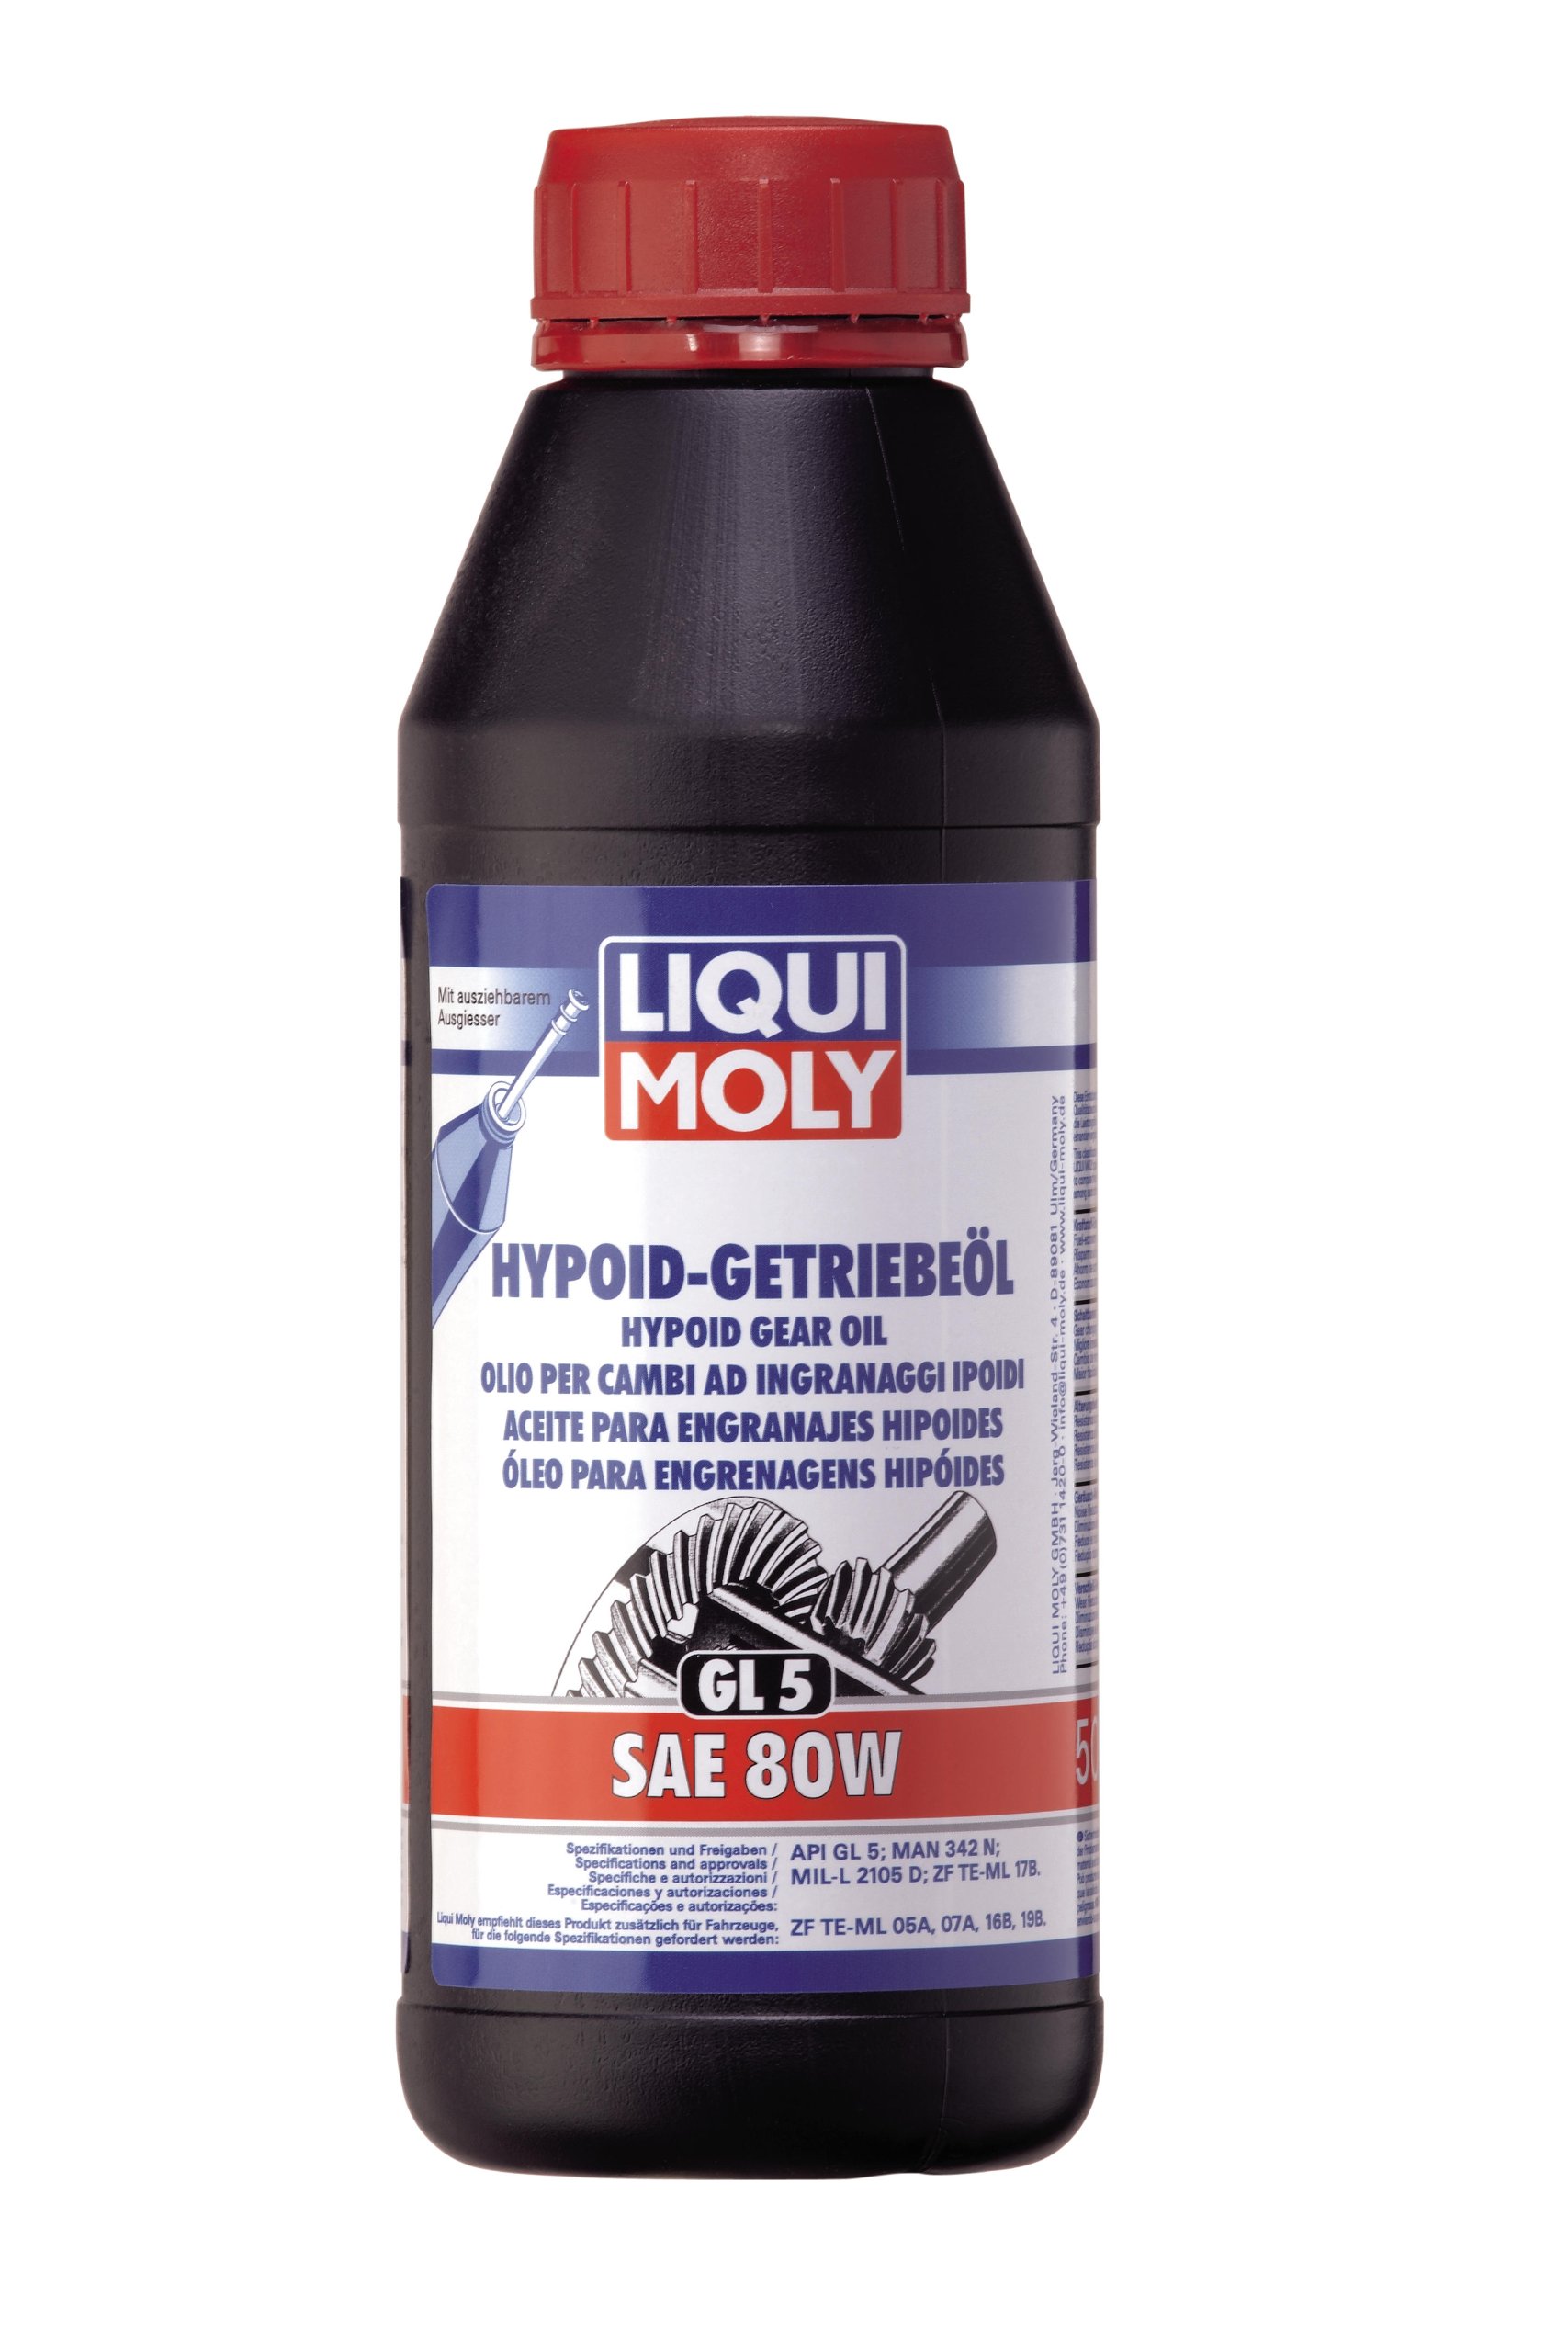 LIQUI MOLY Hypoid-Getriebeöl (GL5) SAE 80W | 500 ml | Getriebeöl | Hydrauliköl | Art.-Nr.: 1402 von Liqui Moly